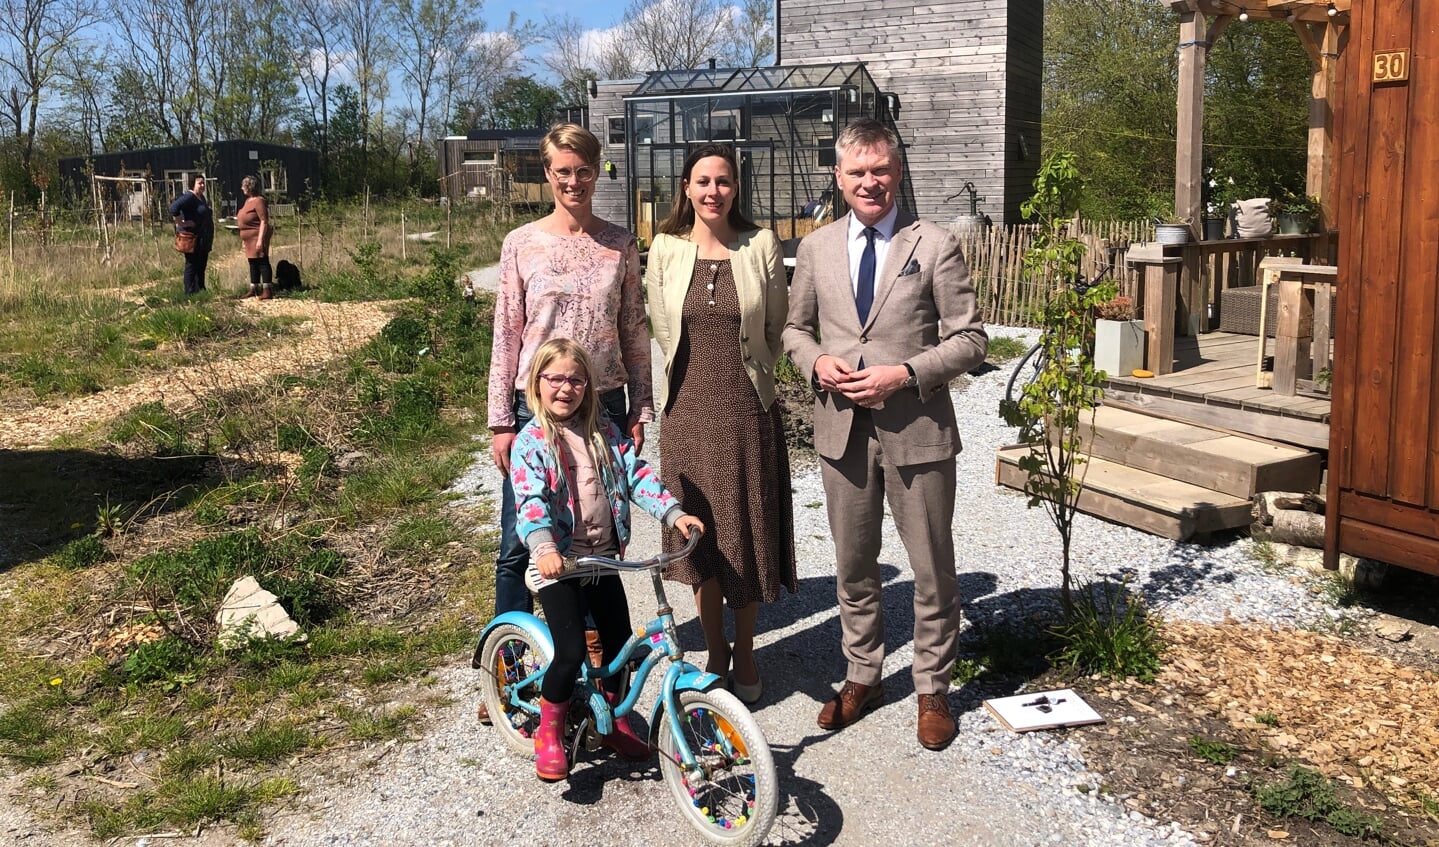 Burgemeester Rehwinkel op bezoek bij klimaatburgemeesters Petra van Kleef (links) en Iris van Asselt met jongste dochter Lune. 